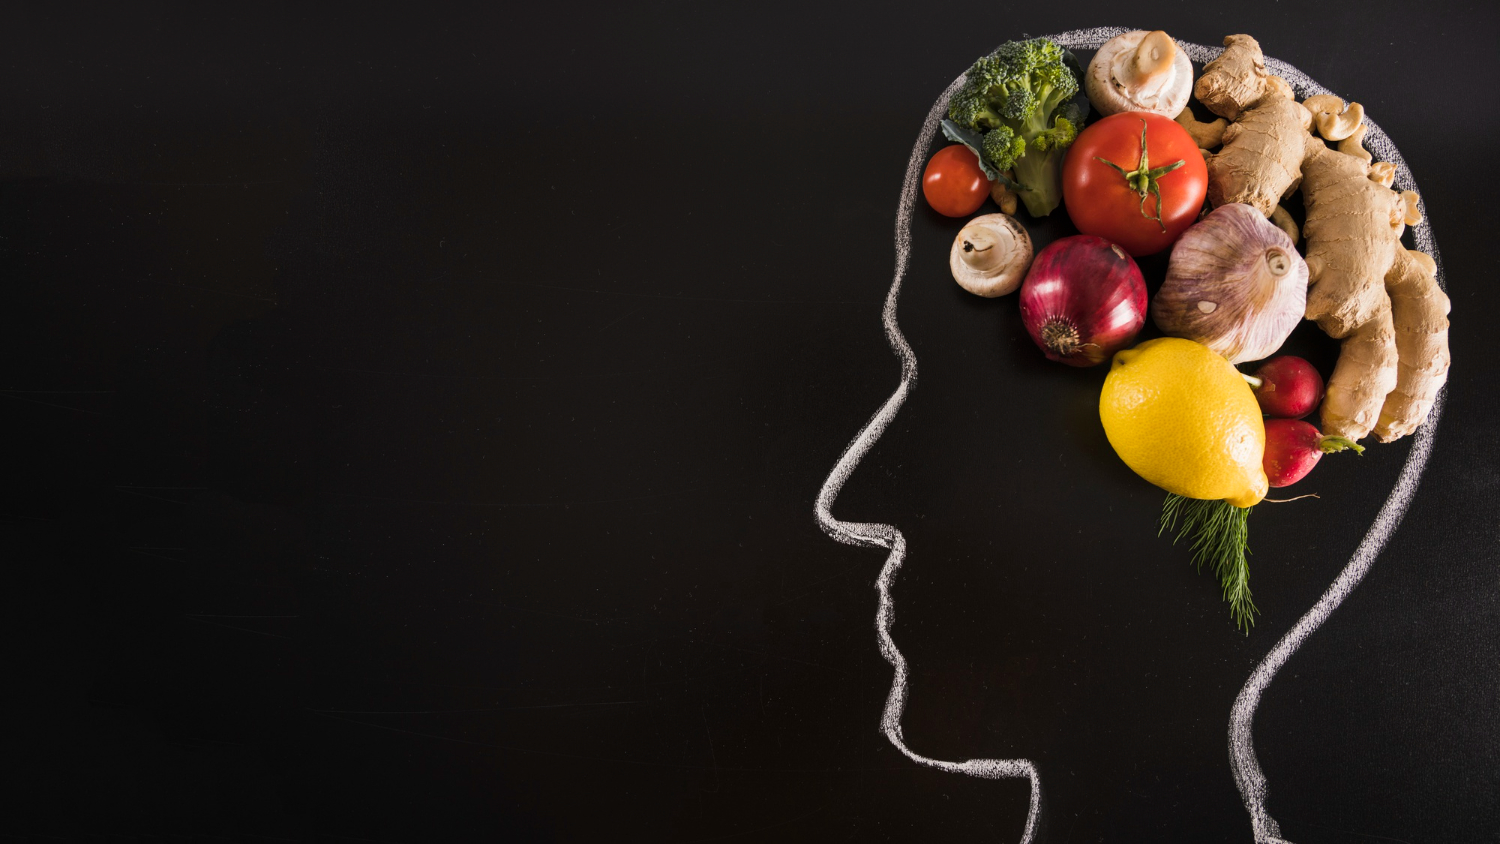 แนะนำอาหารที่มีส่วนช่วยบำรุงสมองได้ดีที่สุด ตัวช่วยสำคัญสำหรับคนที่จำเป็นต้องใช้ความคิด